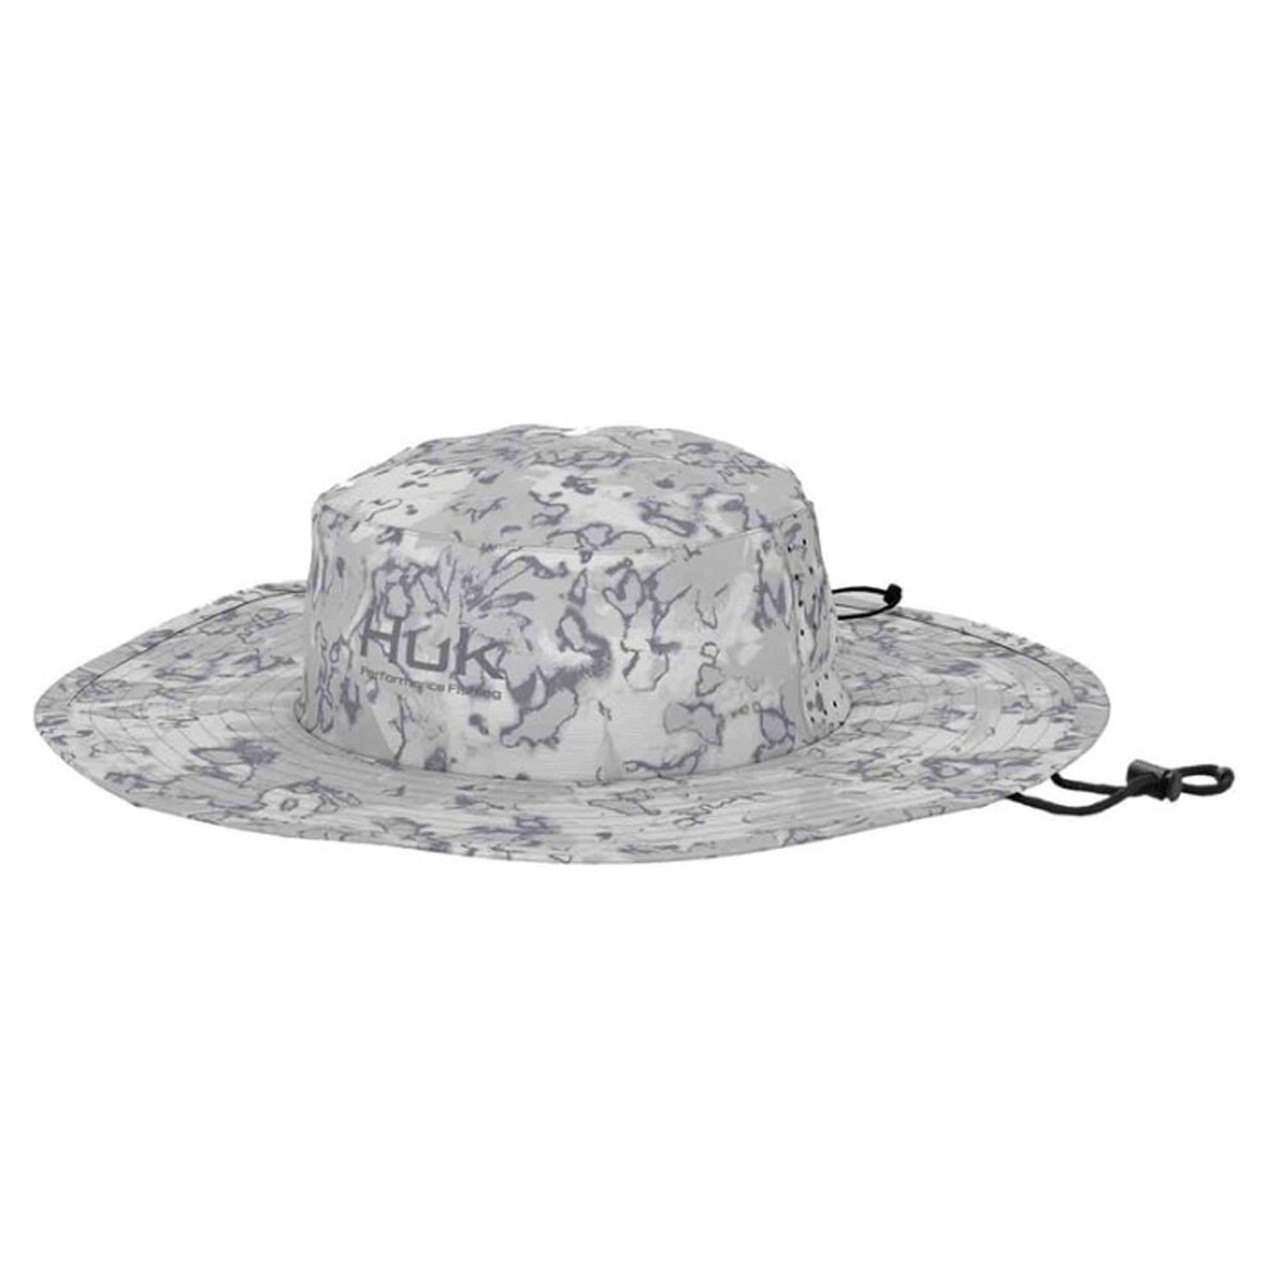 Huk Men's Boonie Fin Flats Bucket Hat, Harbor Mist